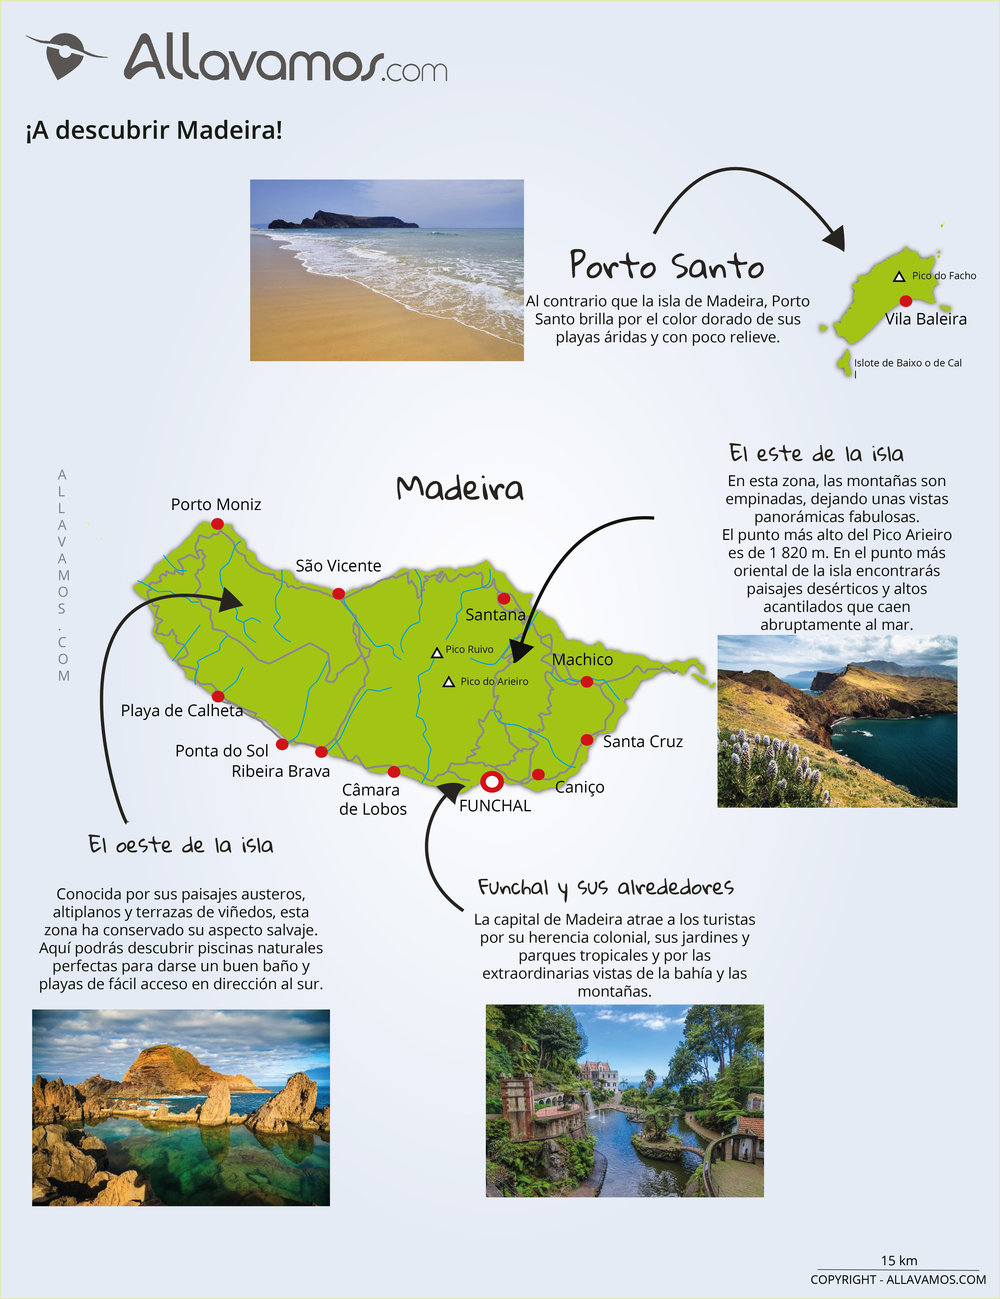 Mapa Turístico da Madeira - Livro - Bertrand